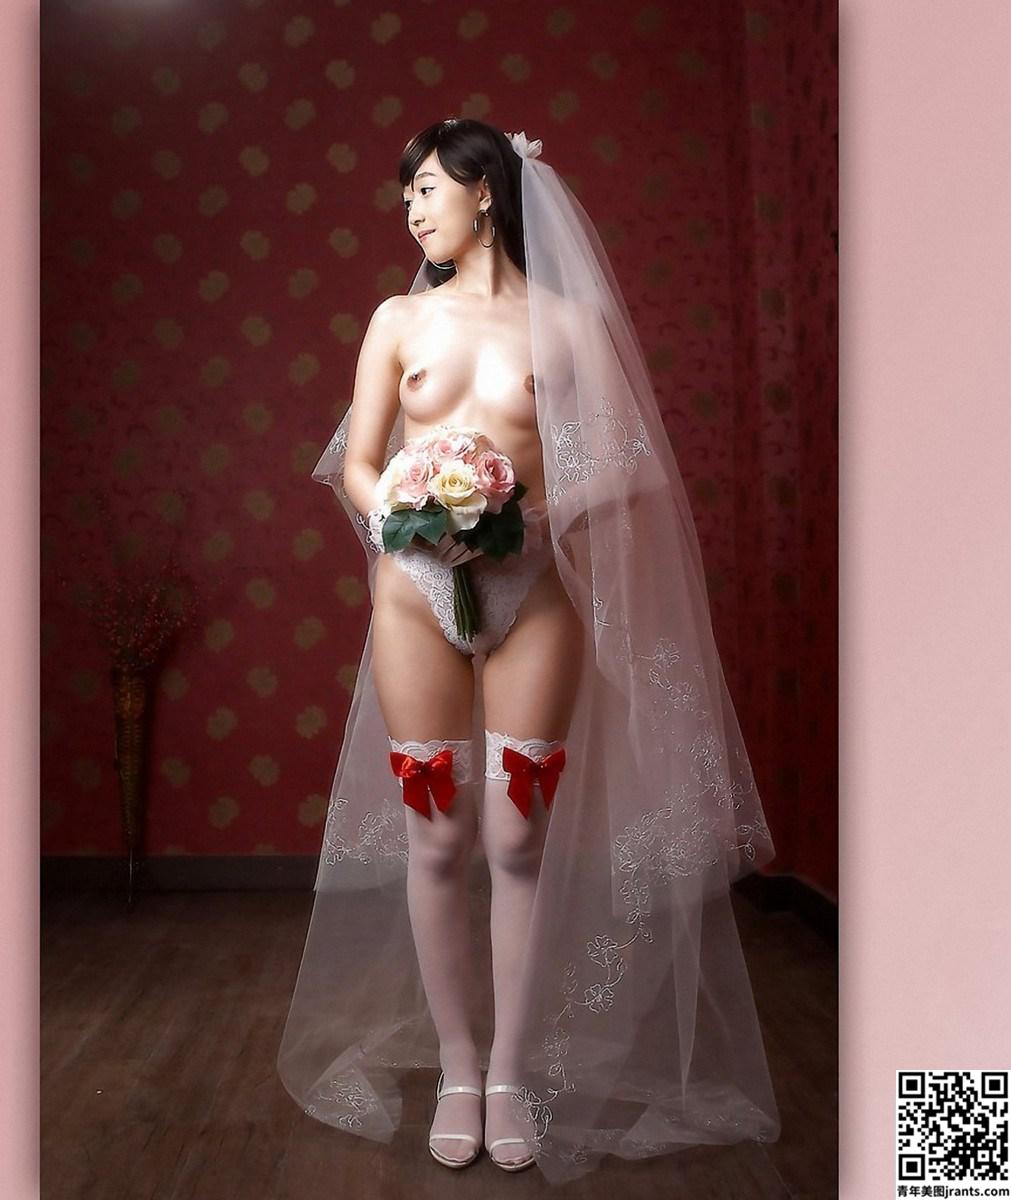 知性美女模特裸体婚纱人体写真福利套图